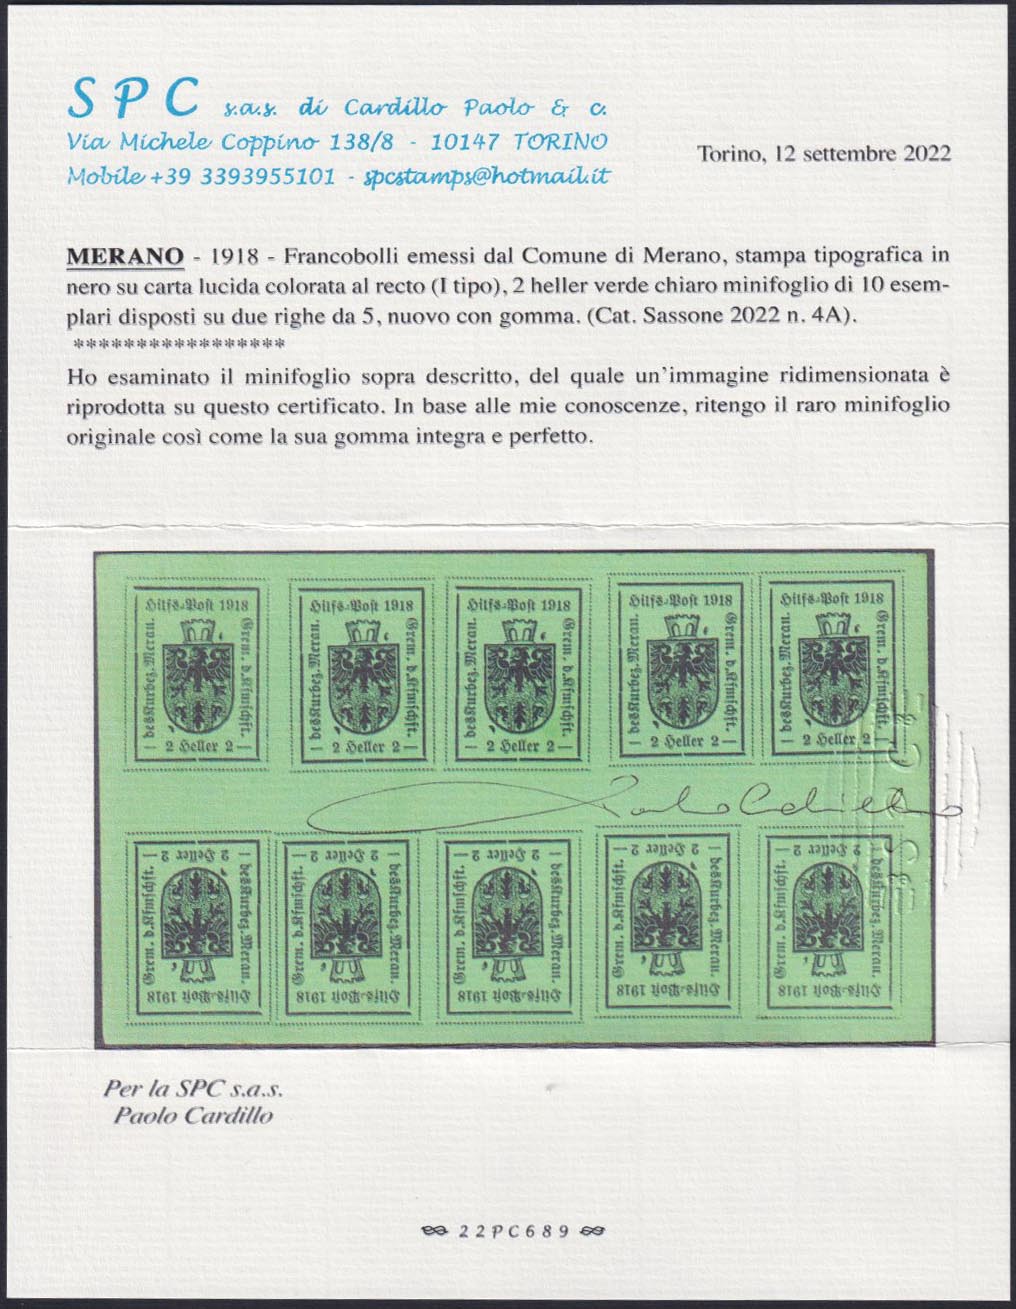 MER17 - Merano, 2 heller verde chiaro stampa tipografica del I tipo, minifoglio di 10 esemplari nuovo con gomma integra (4A).